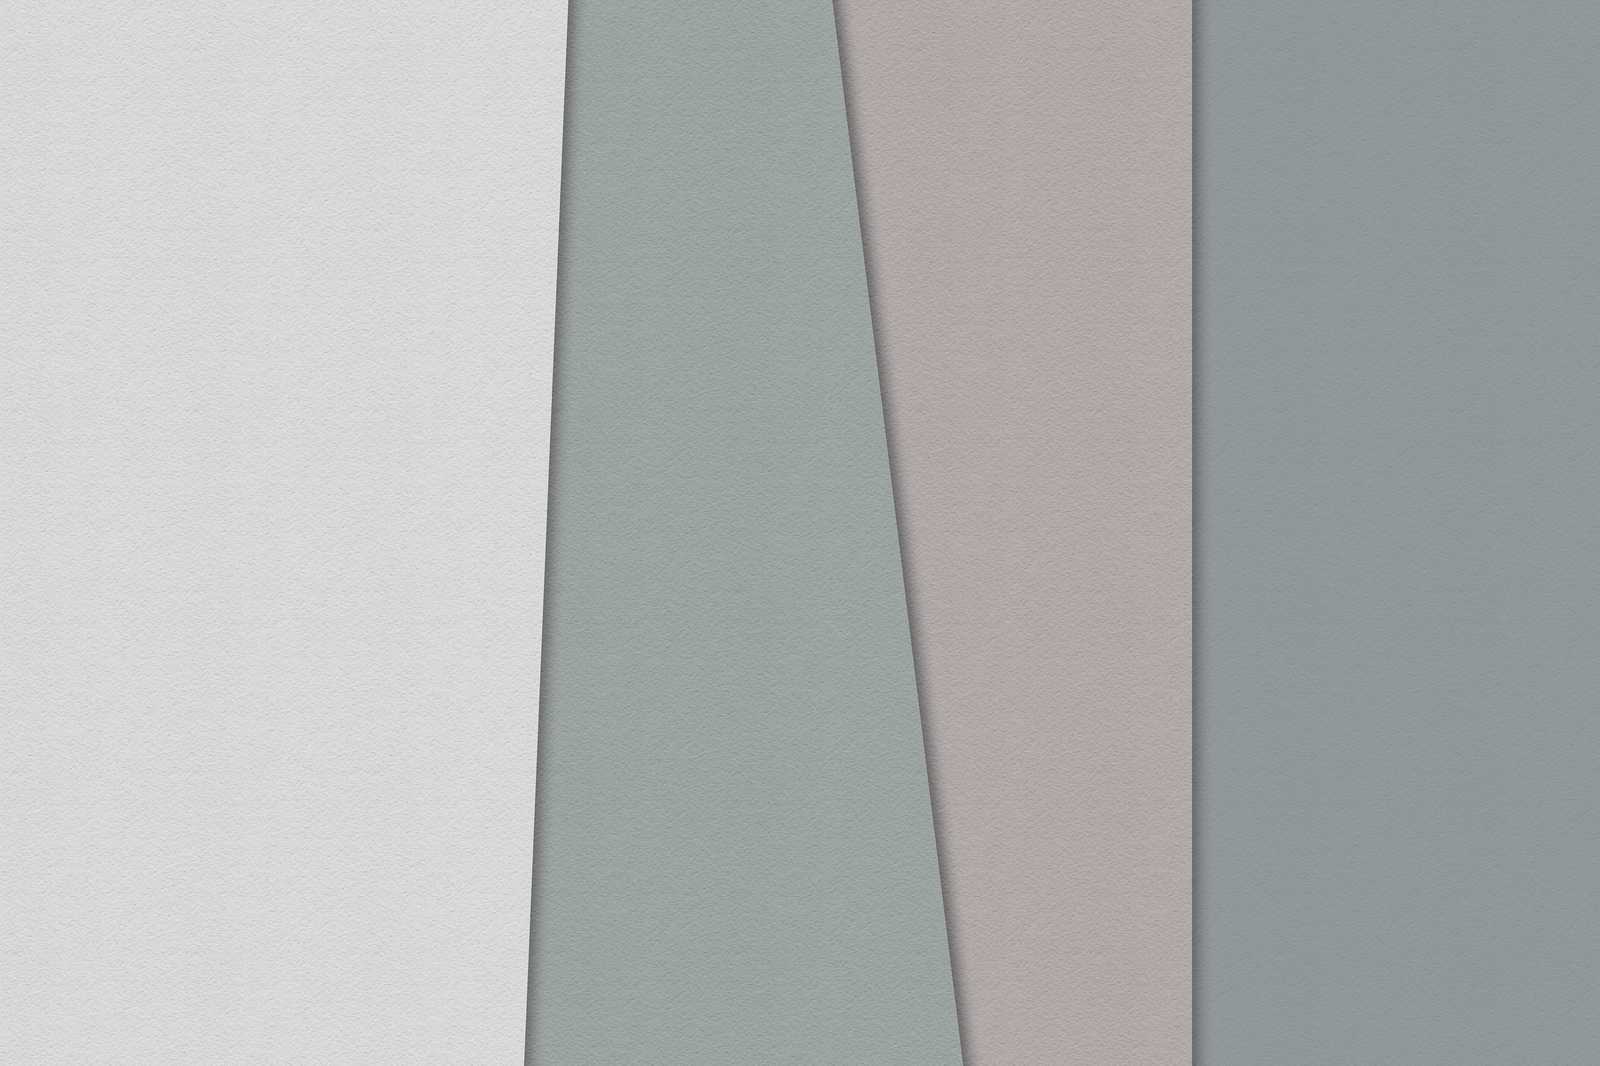             Carta stratificata 1 - Pittura grafica su tela con aree colorate in una struttura di carta fatta a mano - 0,90 m x 0,60 m
        